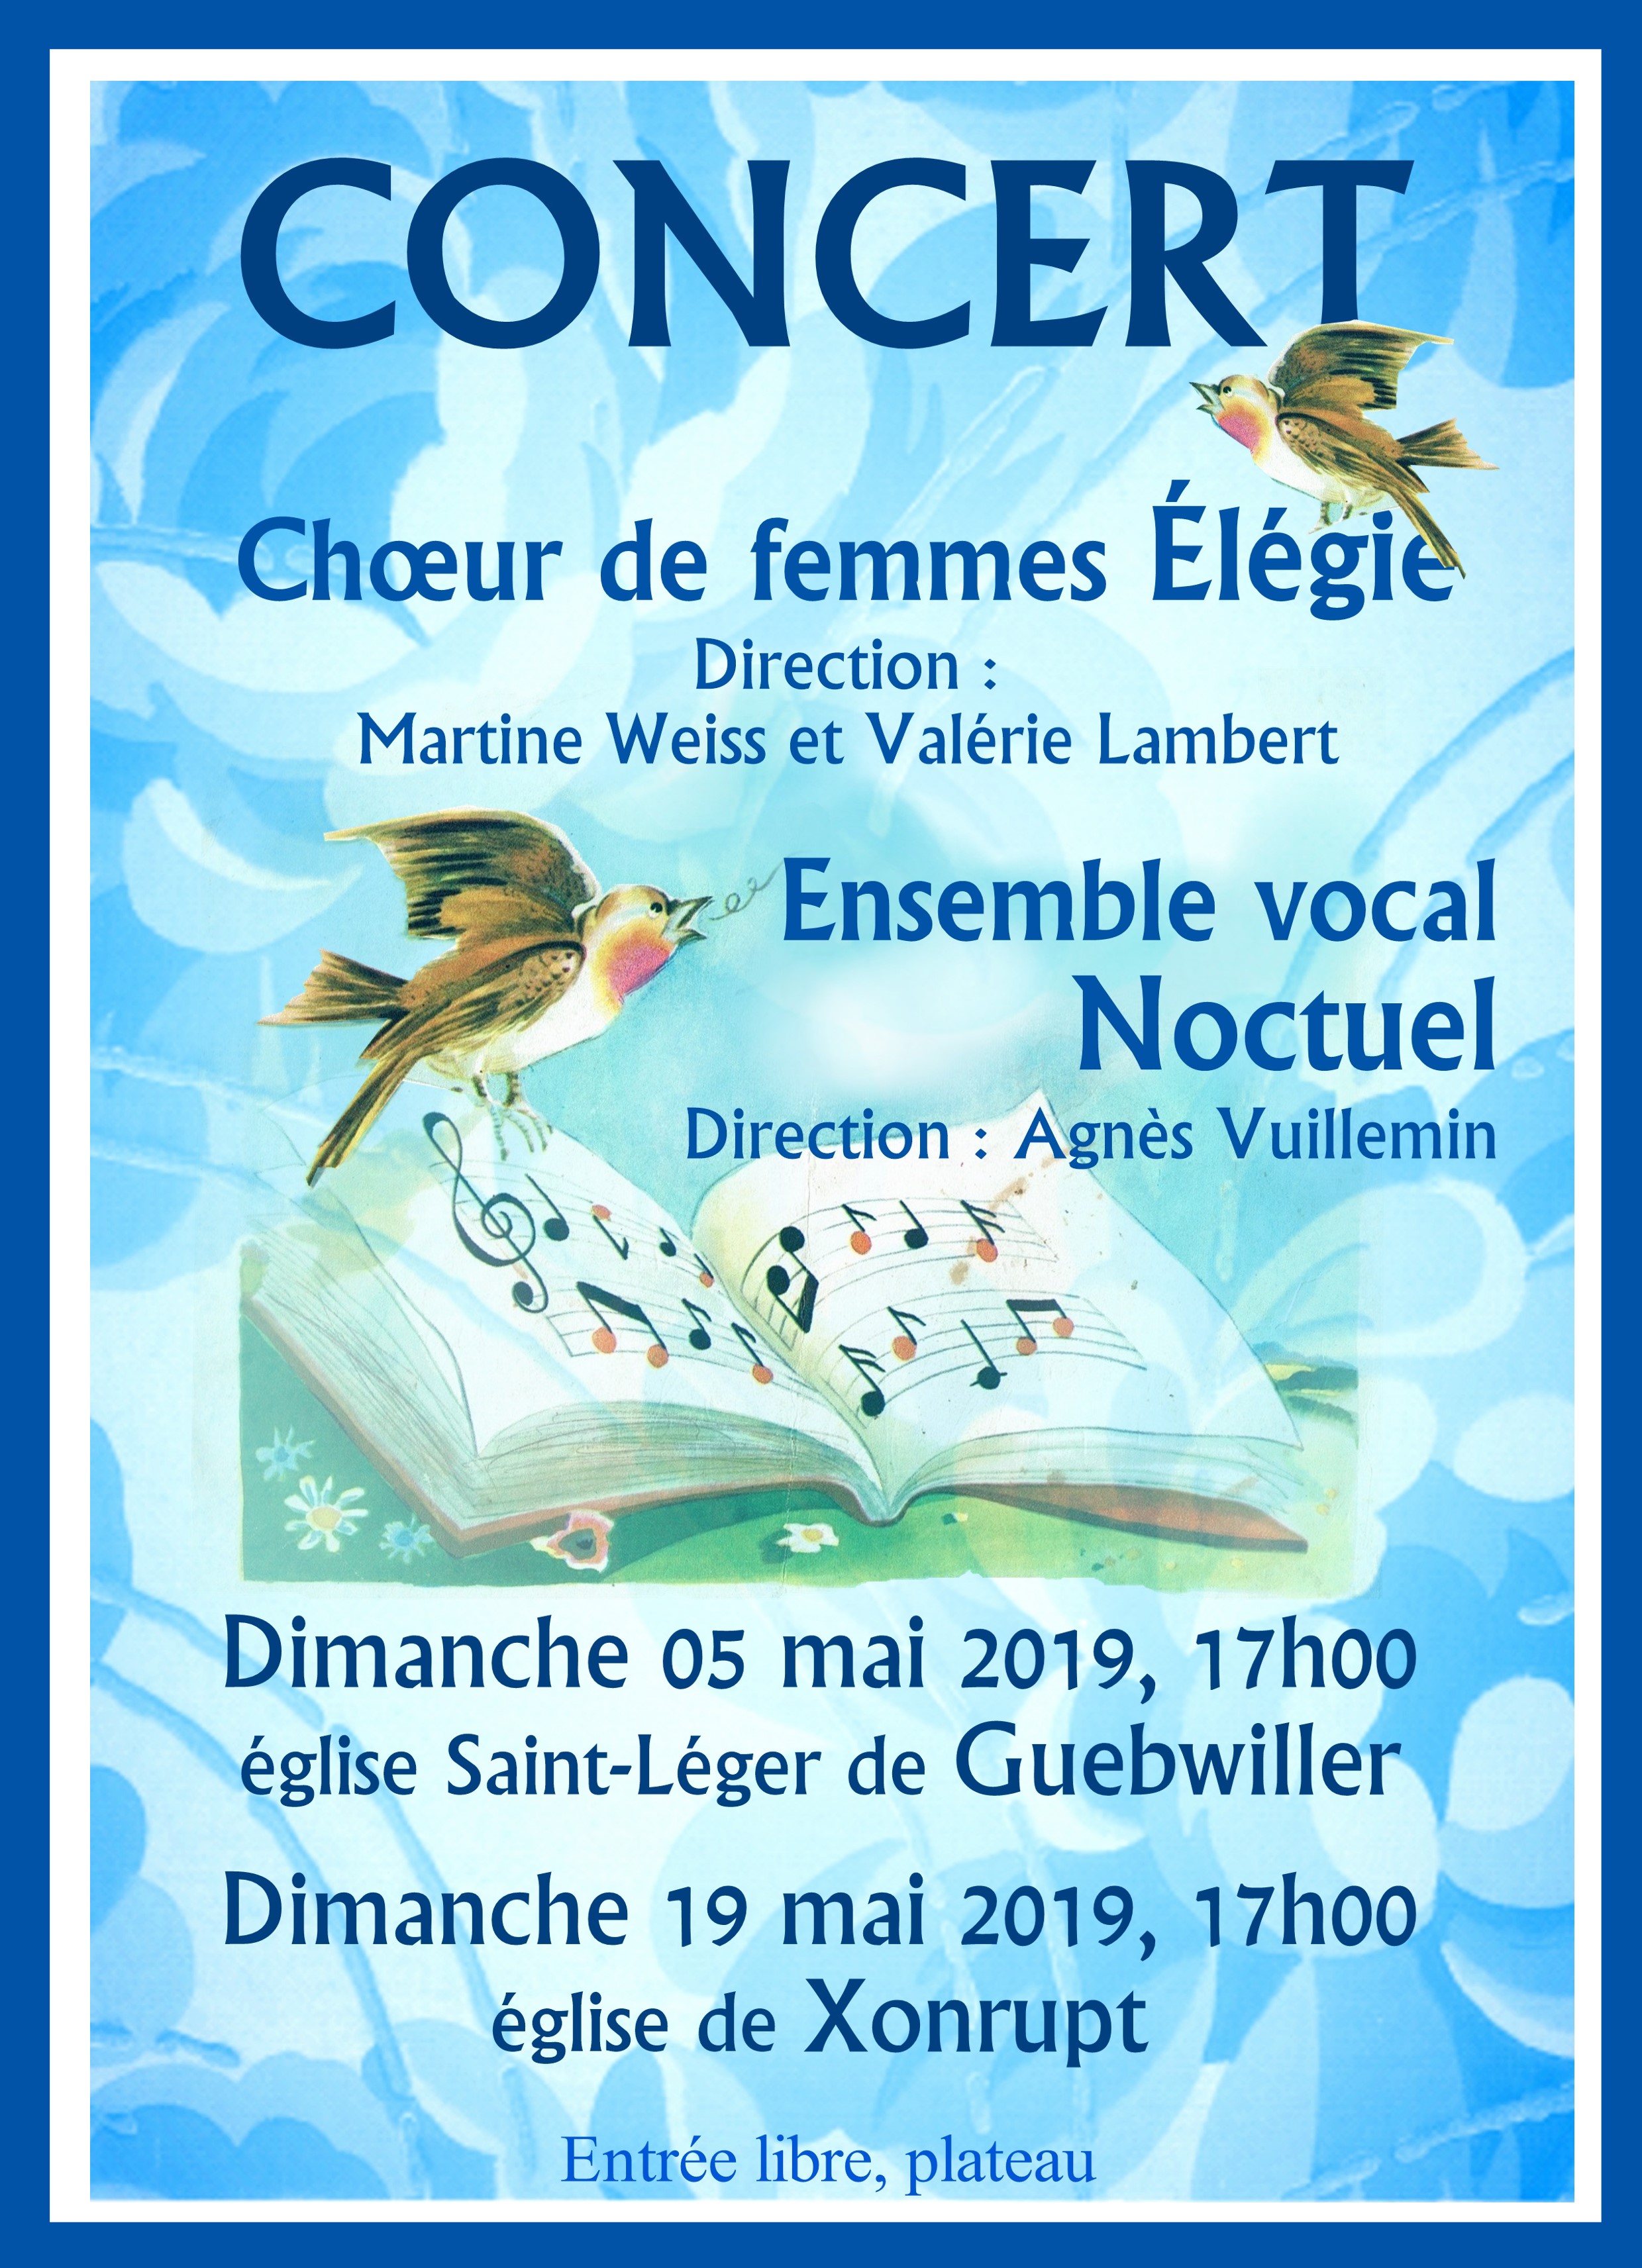 l'ensemble Noctuel en concert du dimanche 19 mai 2019 à 17 h à l'église de Xonrupt. Entrée libre